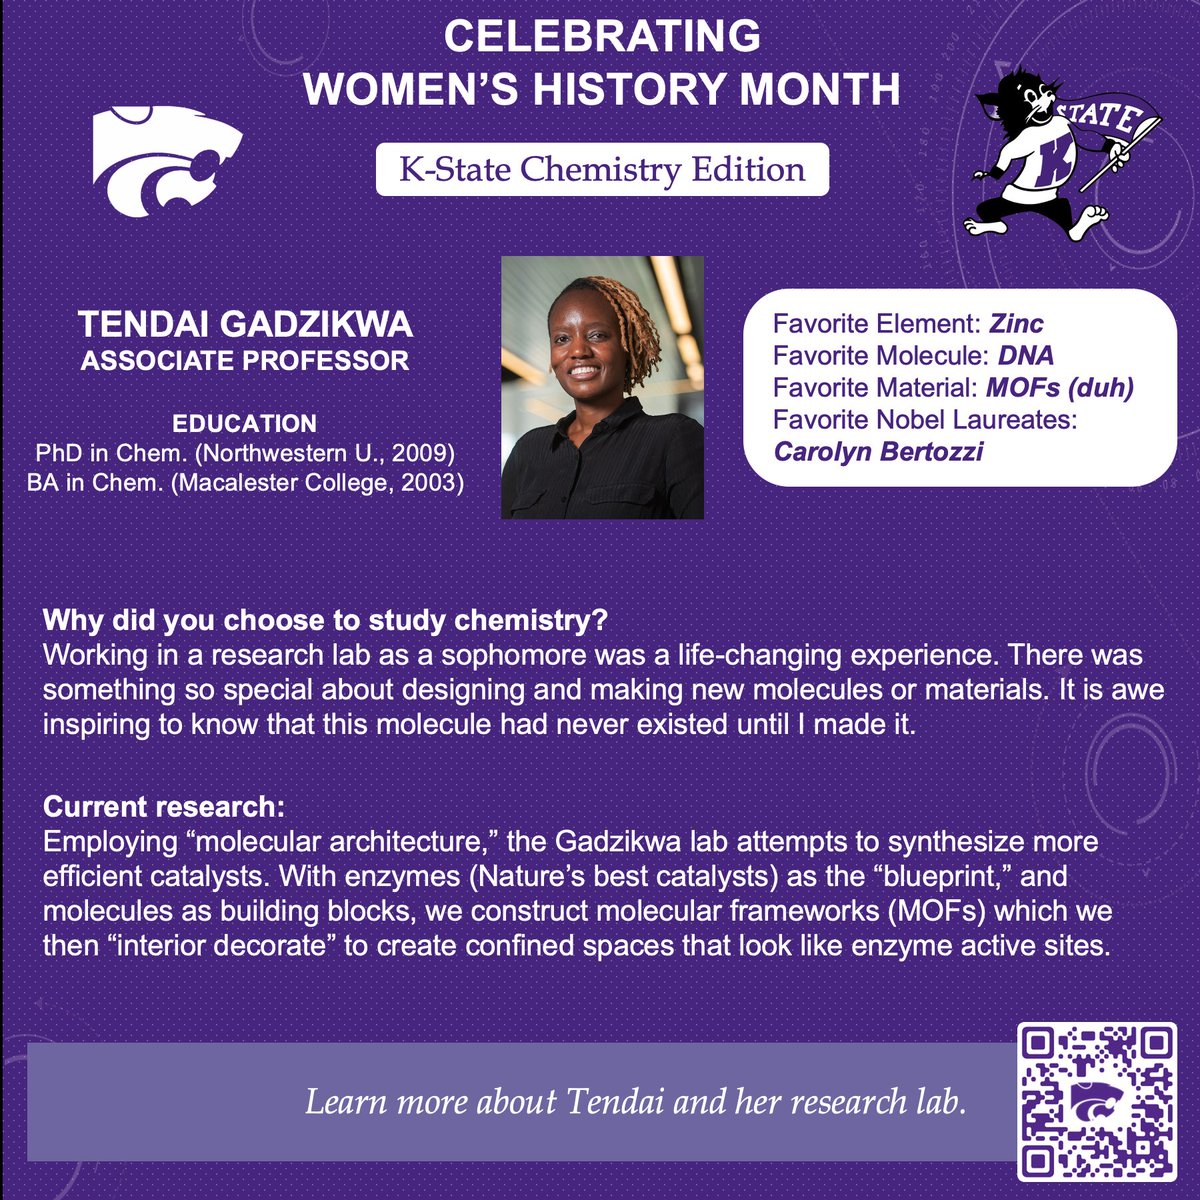 Next up is Tendai Gadzikwa @GadzikwaLab #WomensHistoryMonth #WomenInChem #BlackInChem